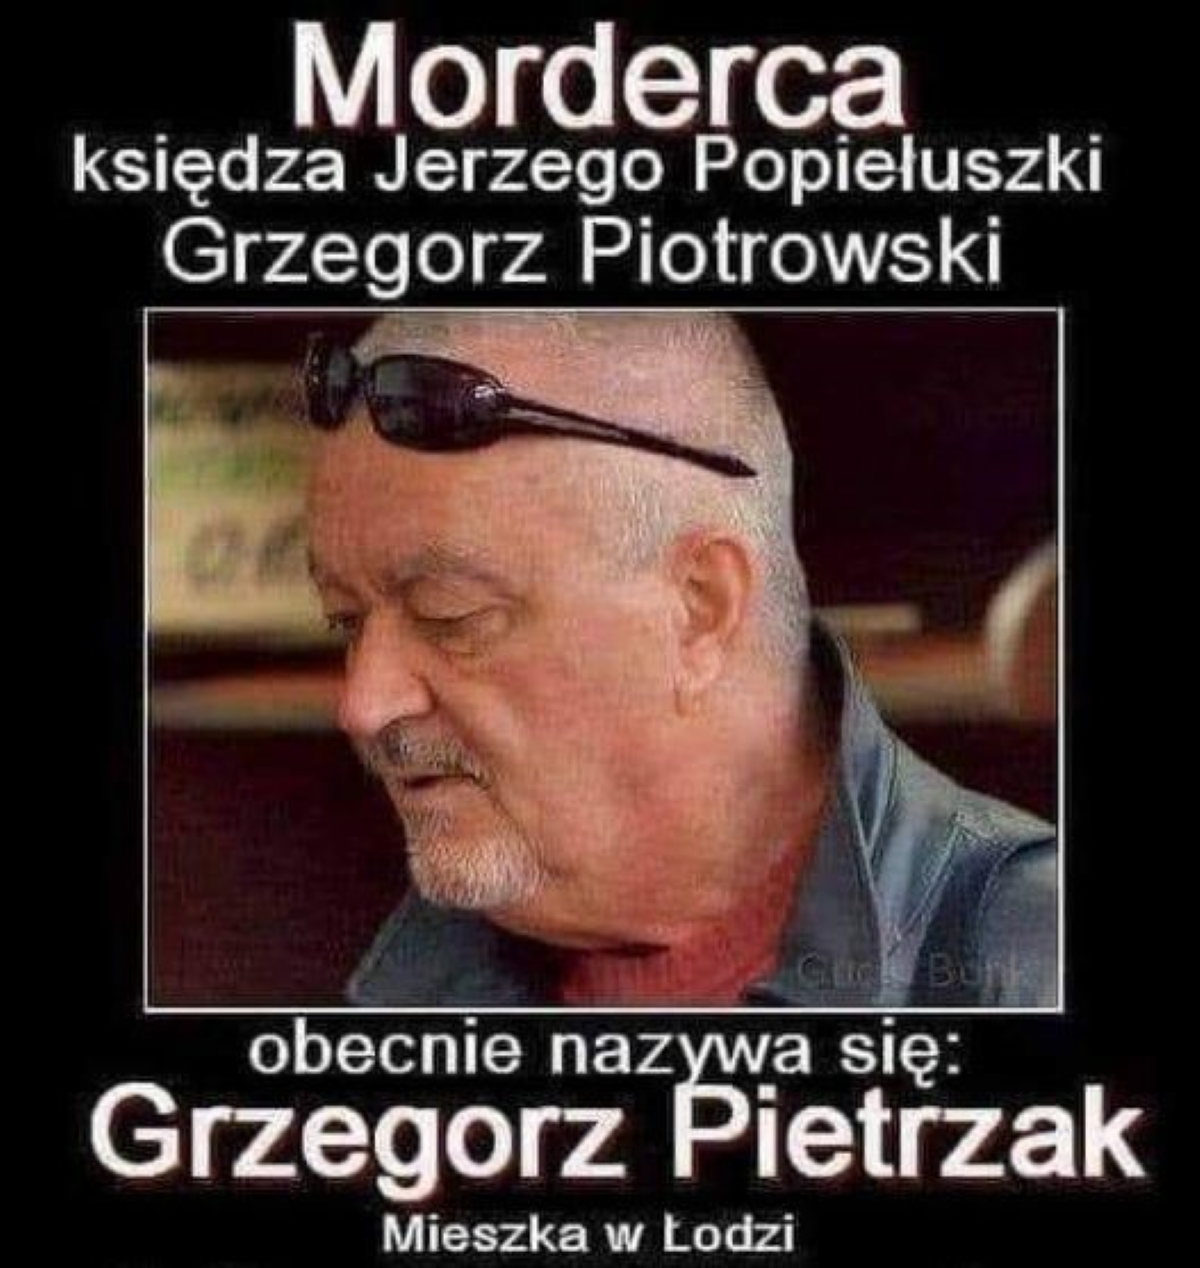 Morderca księdza Jerzego Popiełuszki - Grzegorz Piotrowski mieszka w łodzi i nazywa się Grzegorz Pietrzak